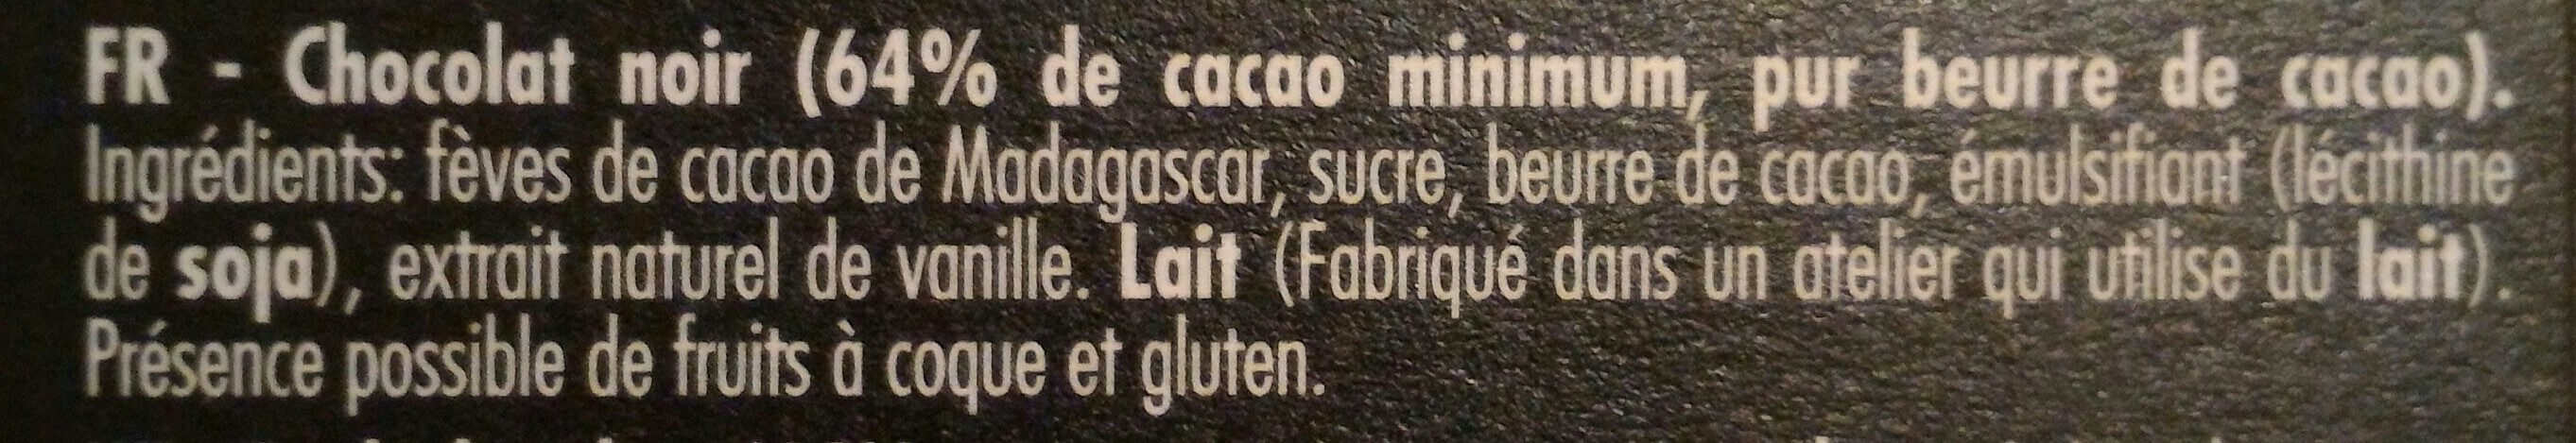 Noir Manjari 64% cacao - Ingredienser - fr